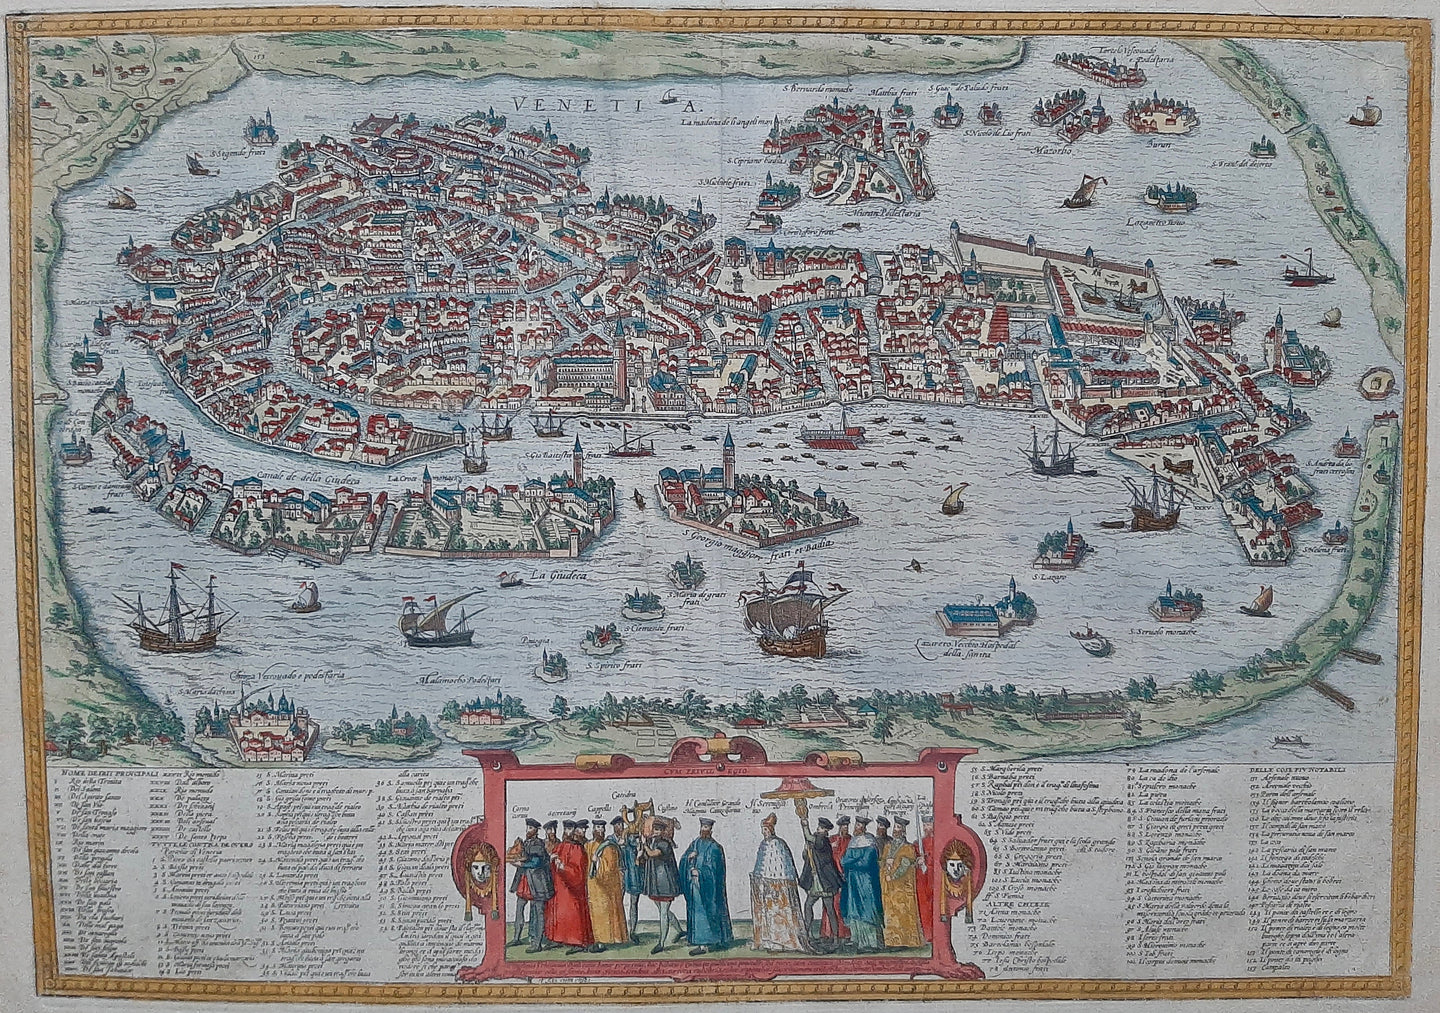 Italy Venetië Venice bird's-eye view - G Braun & F Hogenberg - 1575